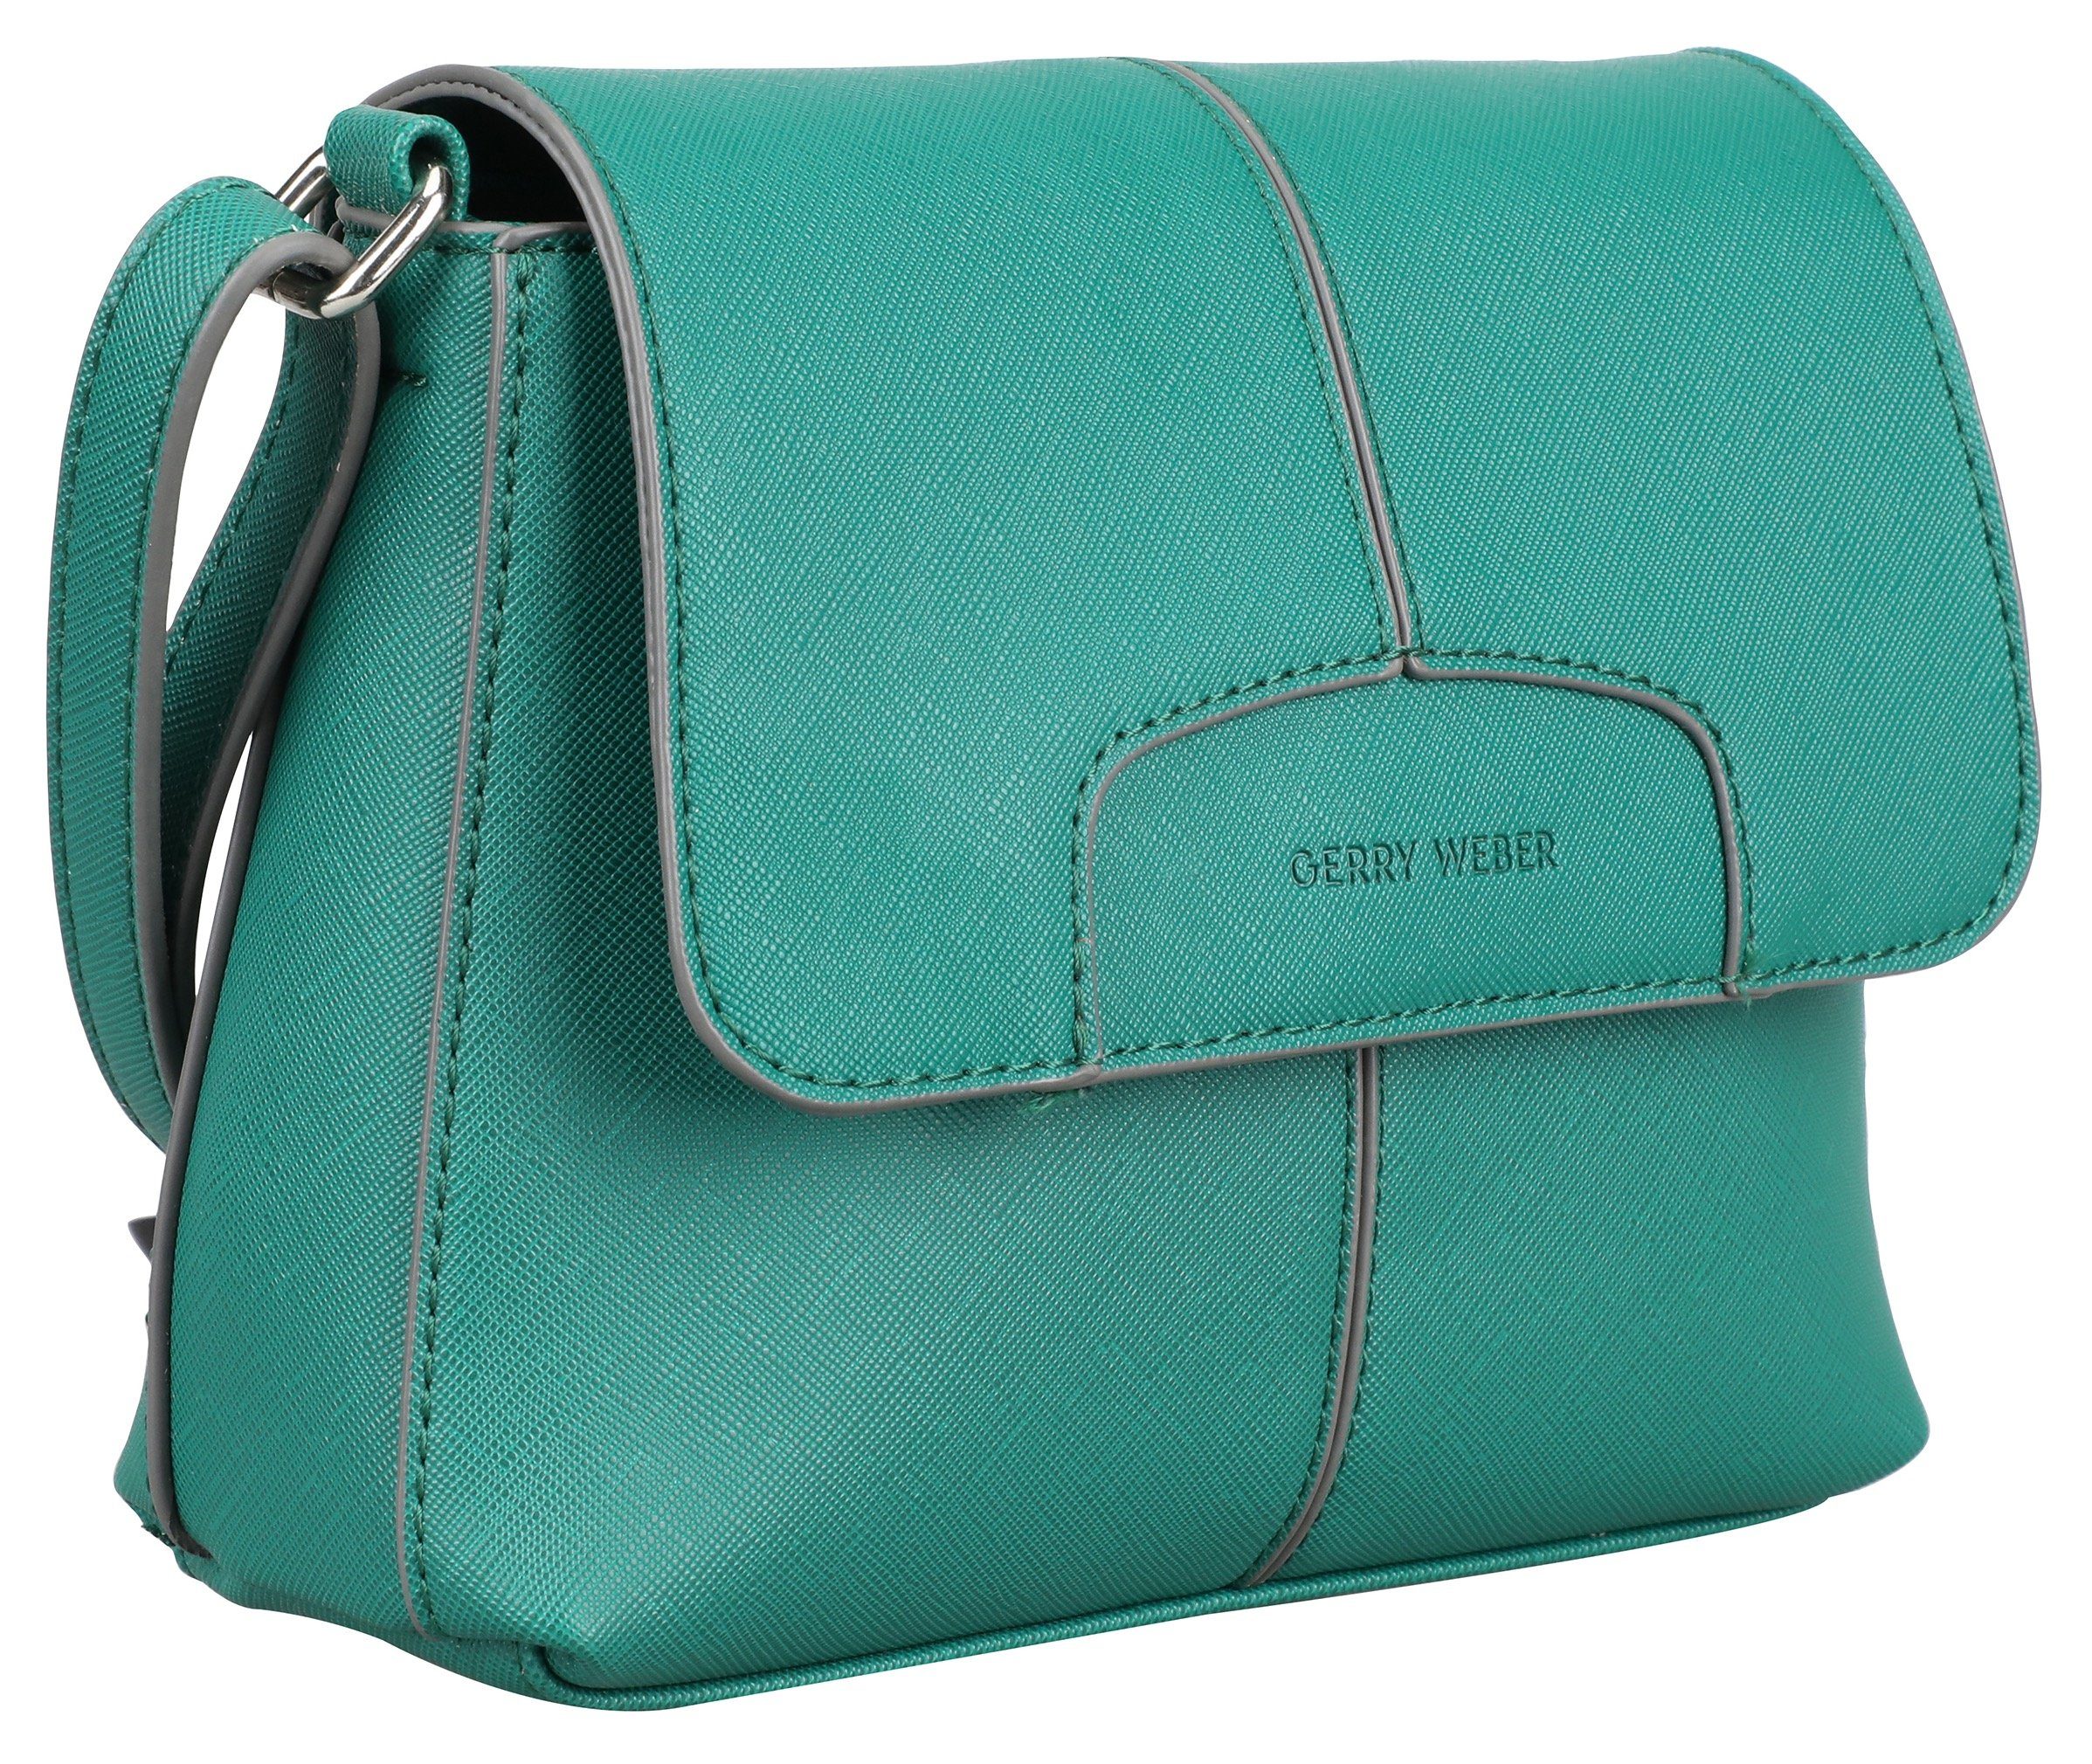 Damen Umhängetaschen GERRY WEBER Bags Umhängetasche colourpatch shoulderbag shf, mit kleiner Münztasche